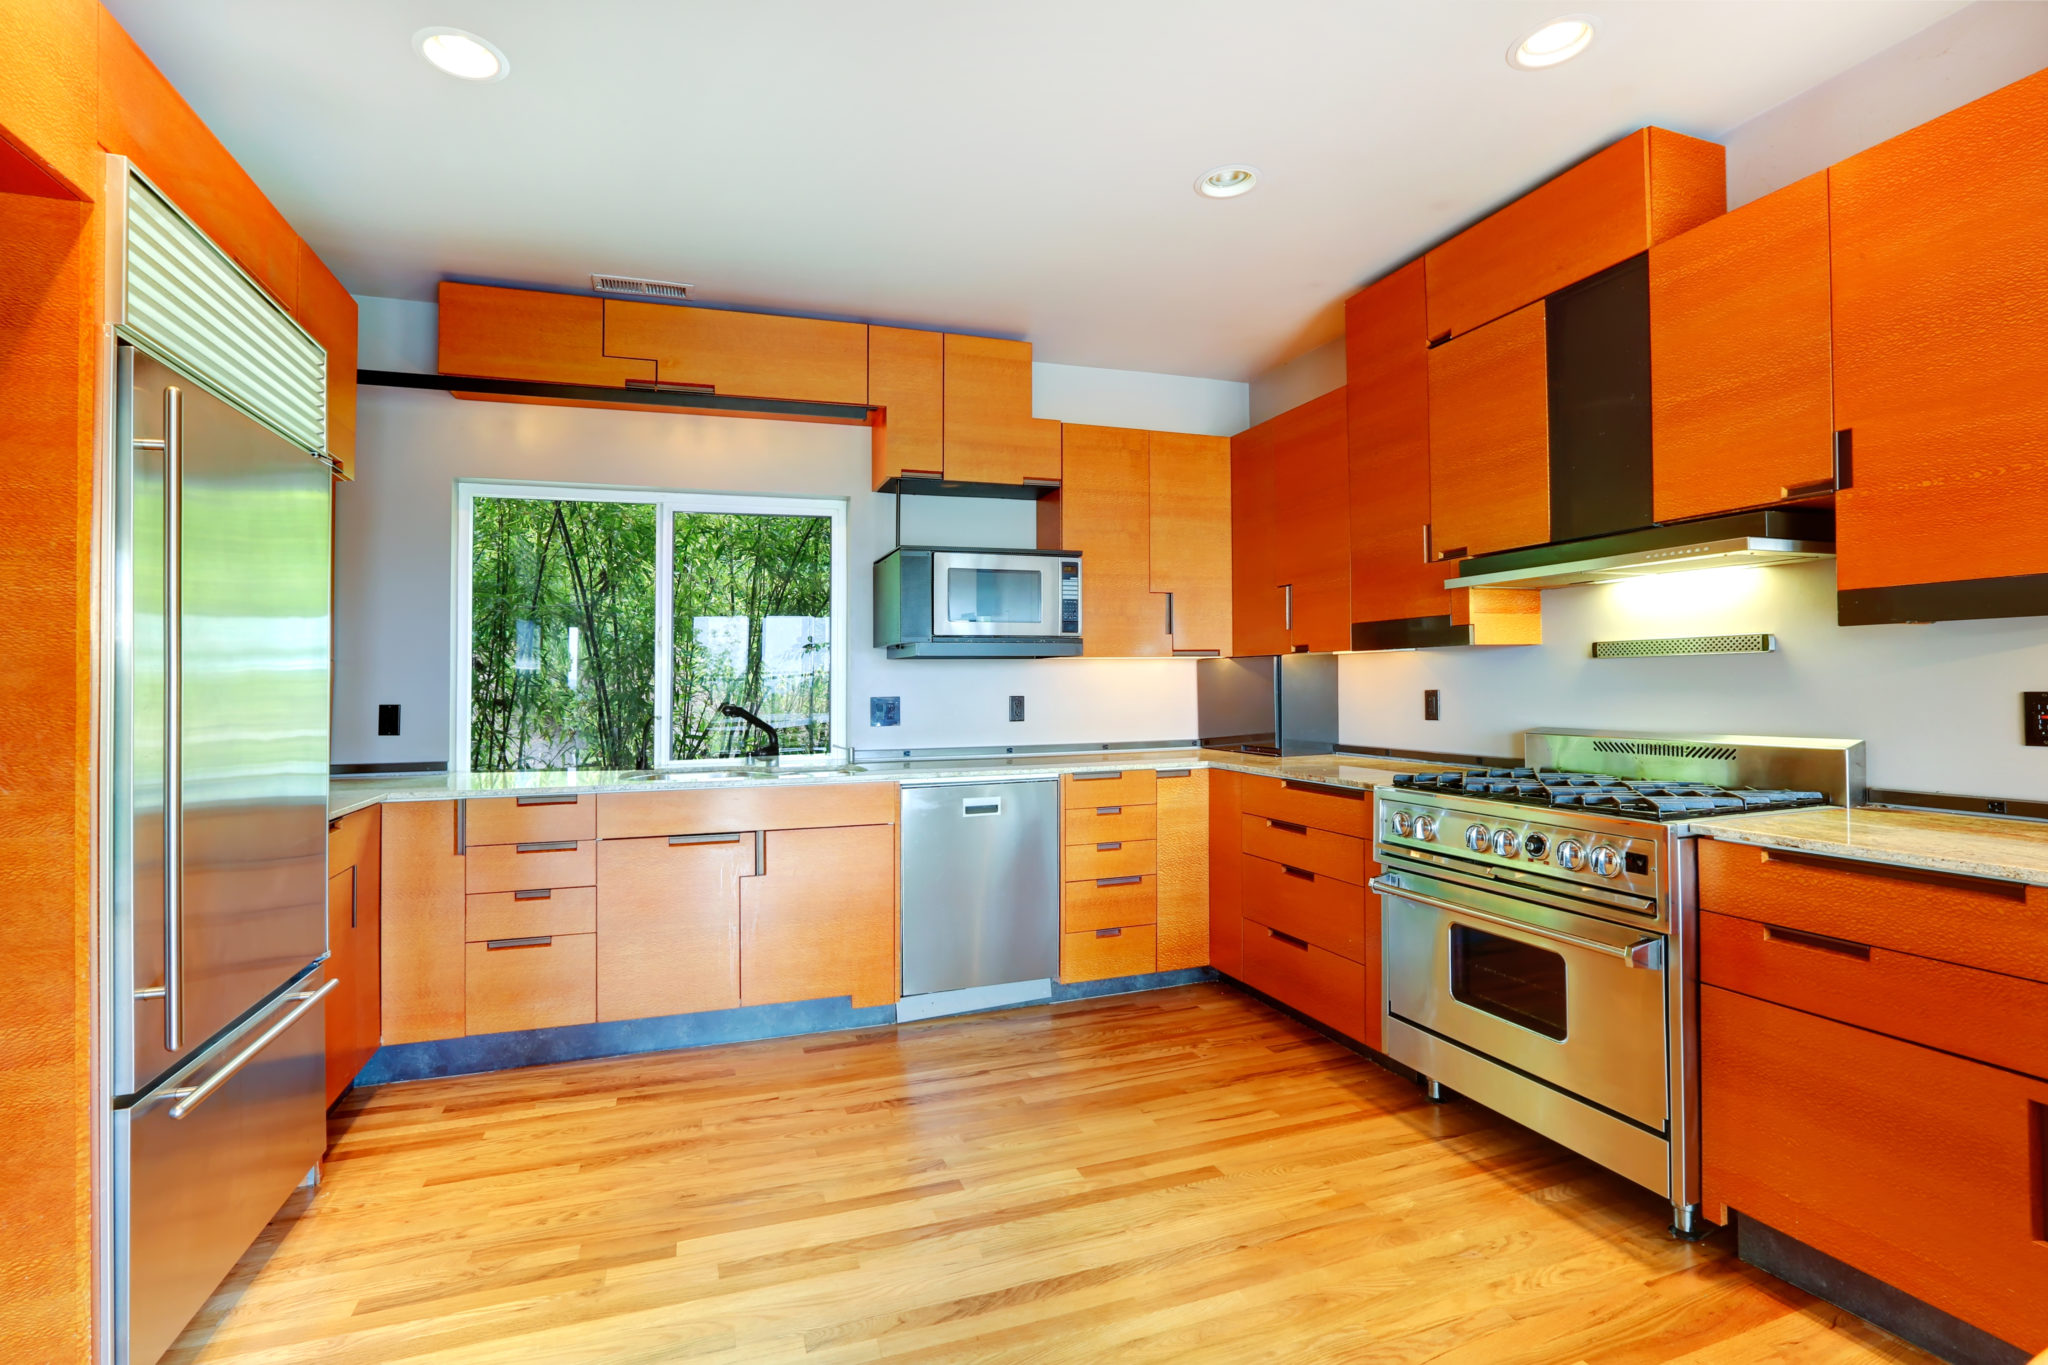 Orange Kitchen Cabinets Artazum Shutterstock 2048x1365 